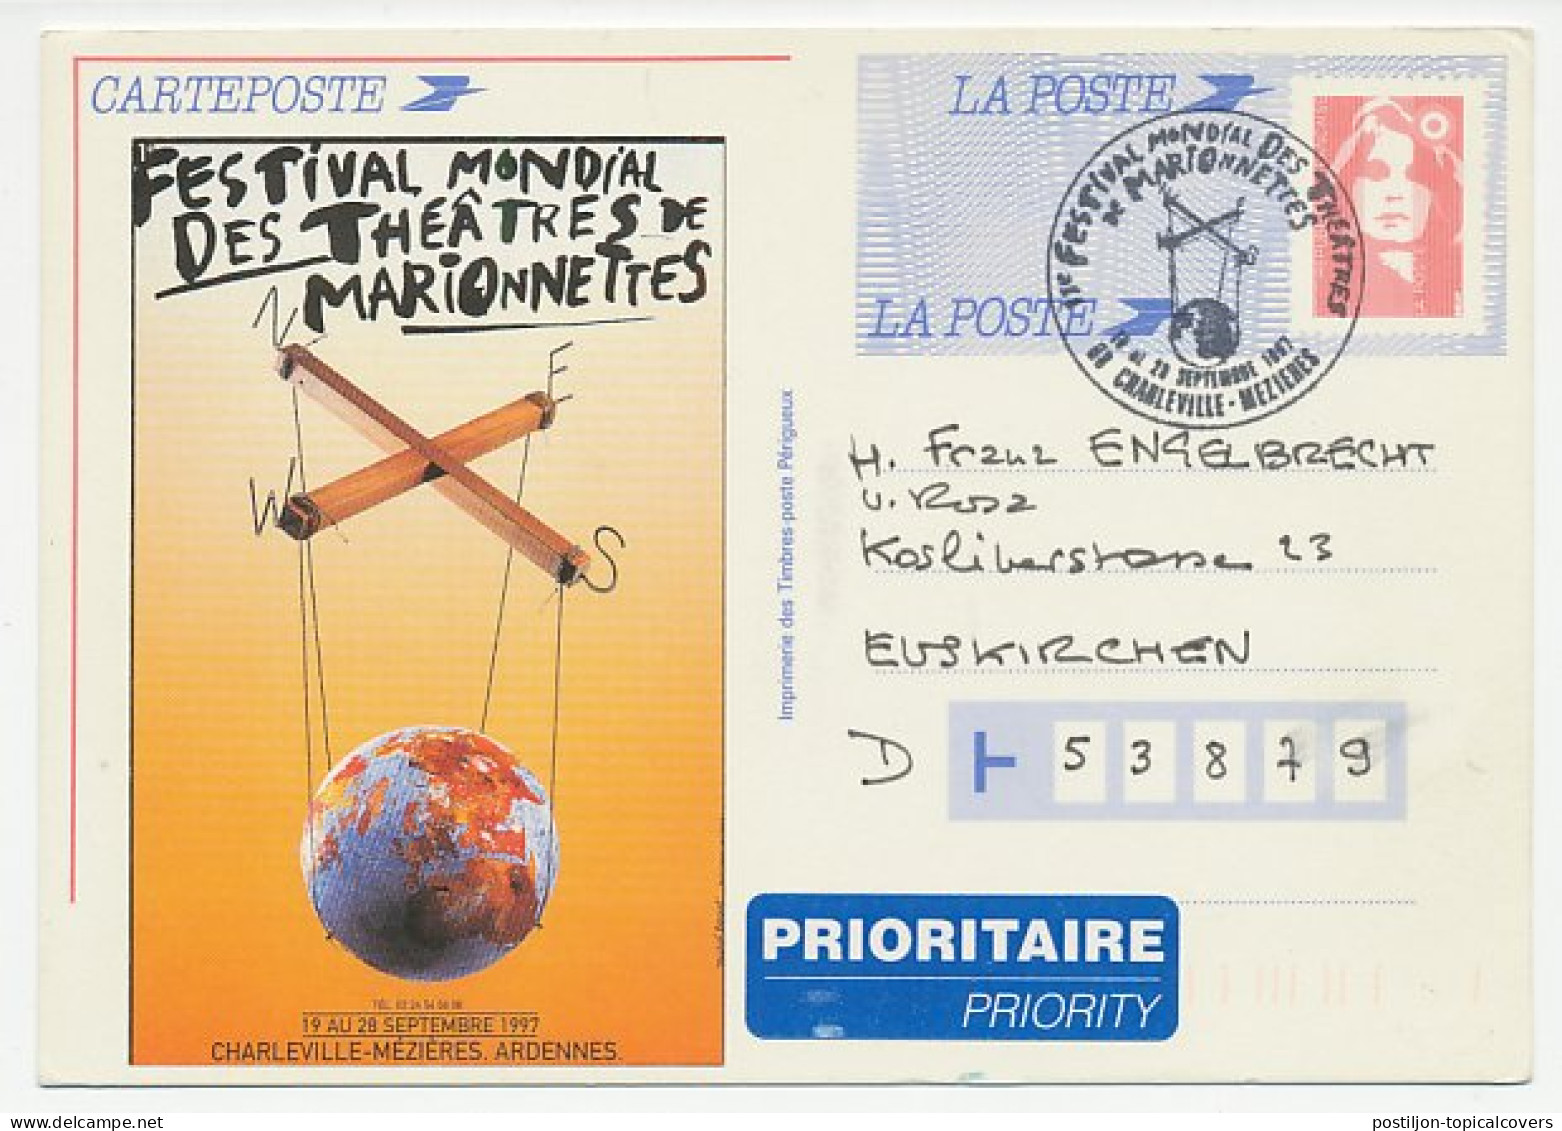 Postal Stationery / Postmark France 1997 World Festival - Marionette - Puppet. Globe On Left Side Is Vignette - Not Pri - Théâtre